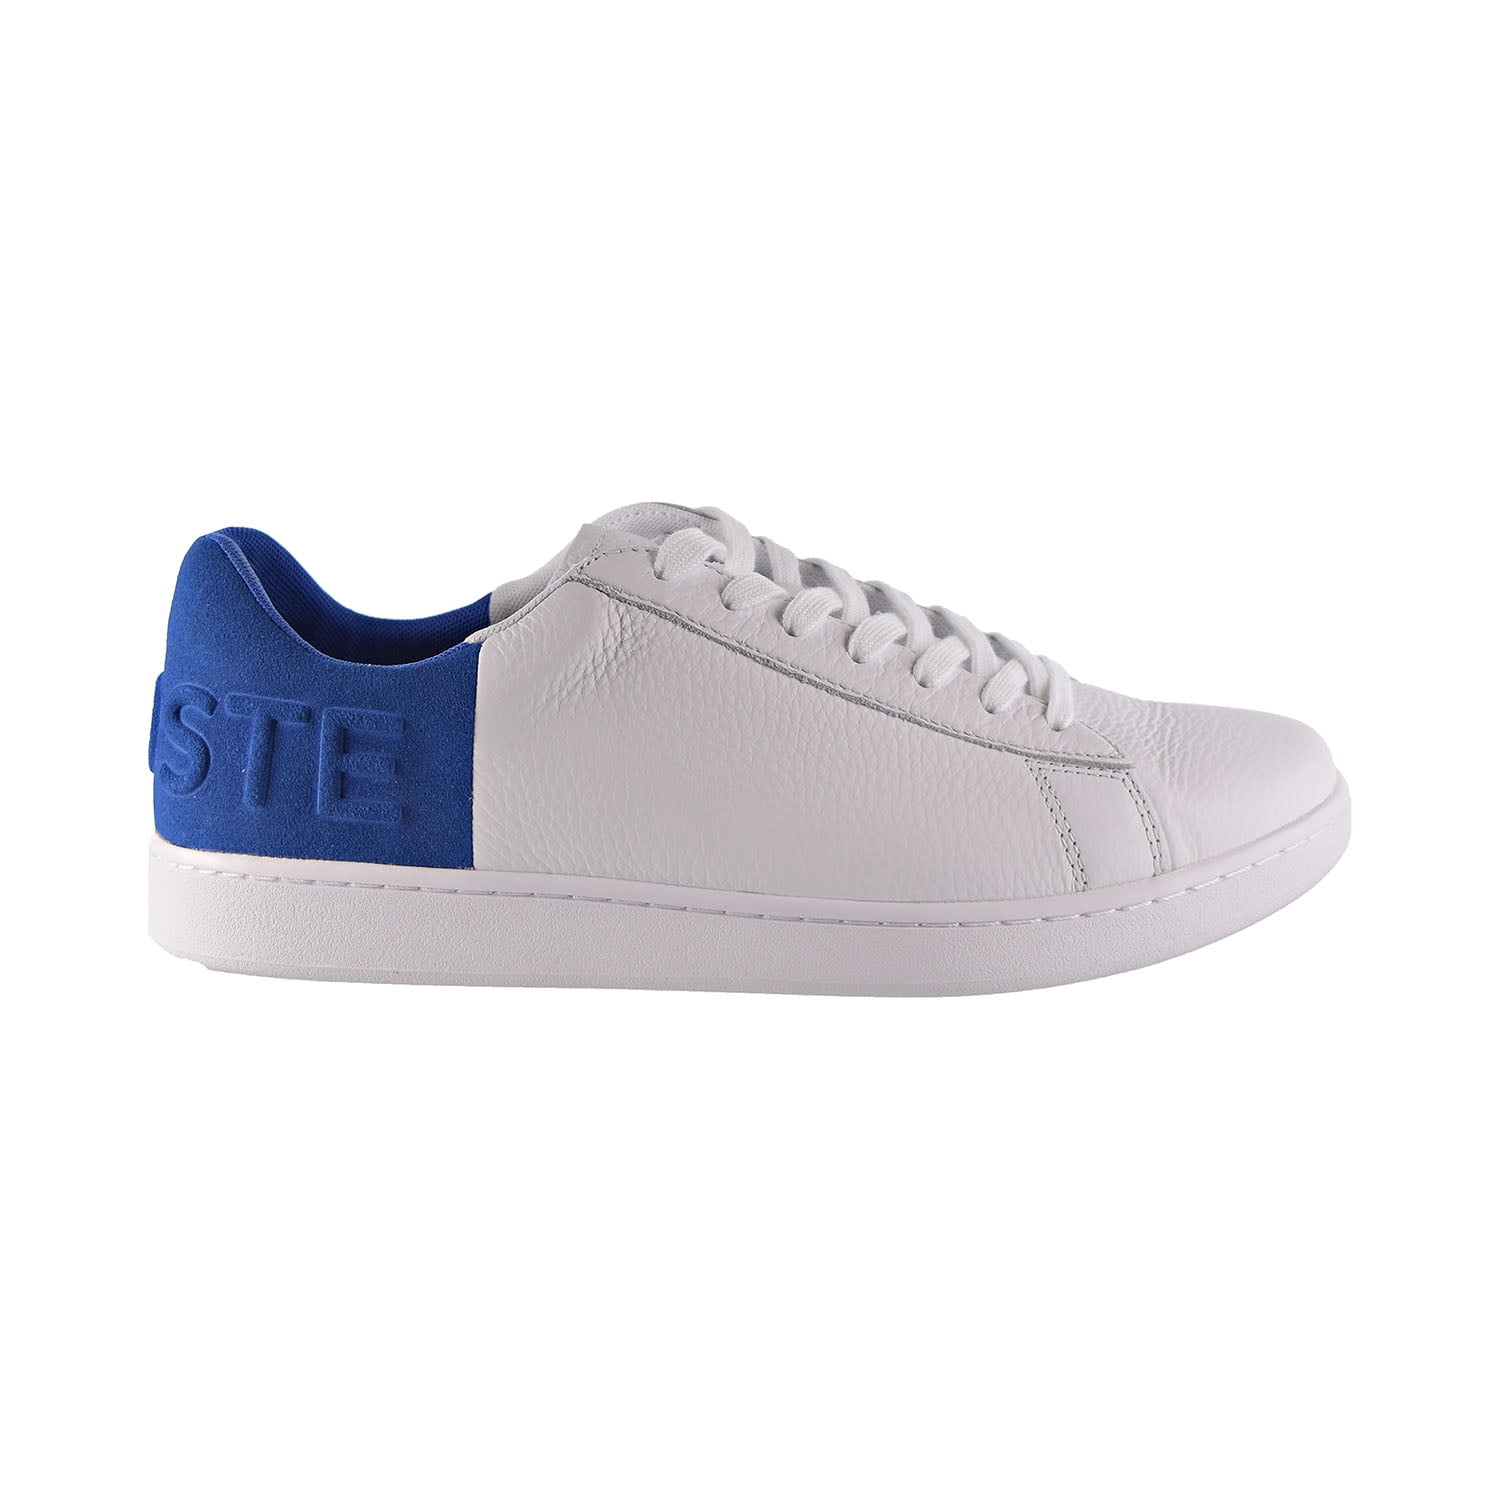 Lacoste Carnaby Evo 419 2 Men's Shoes White/Blue 7-38sma0044-080 - Walmart.com